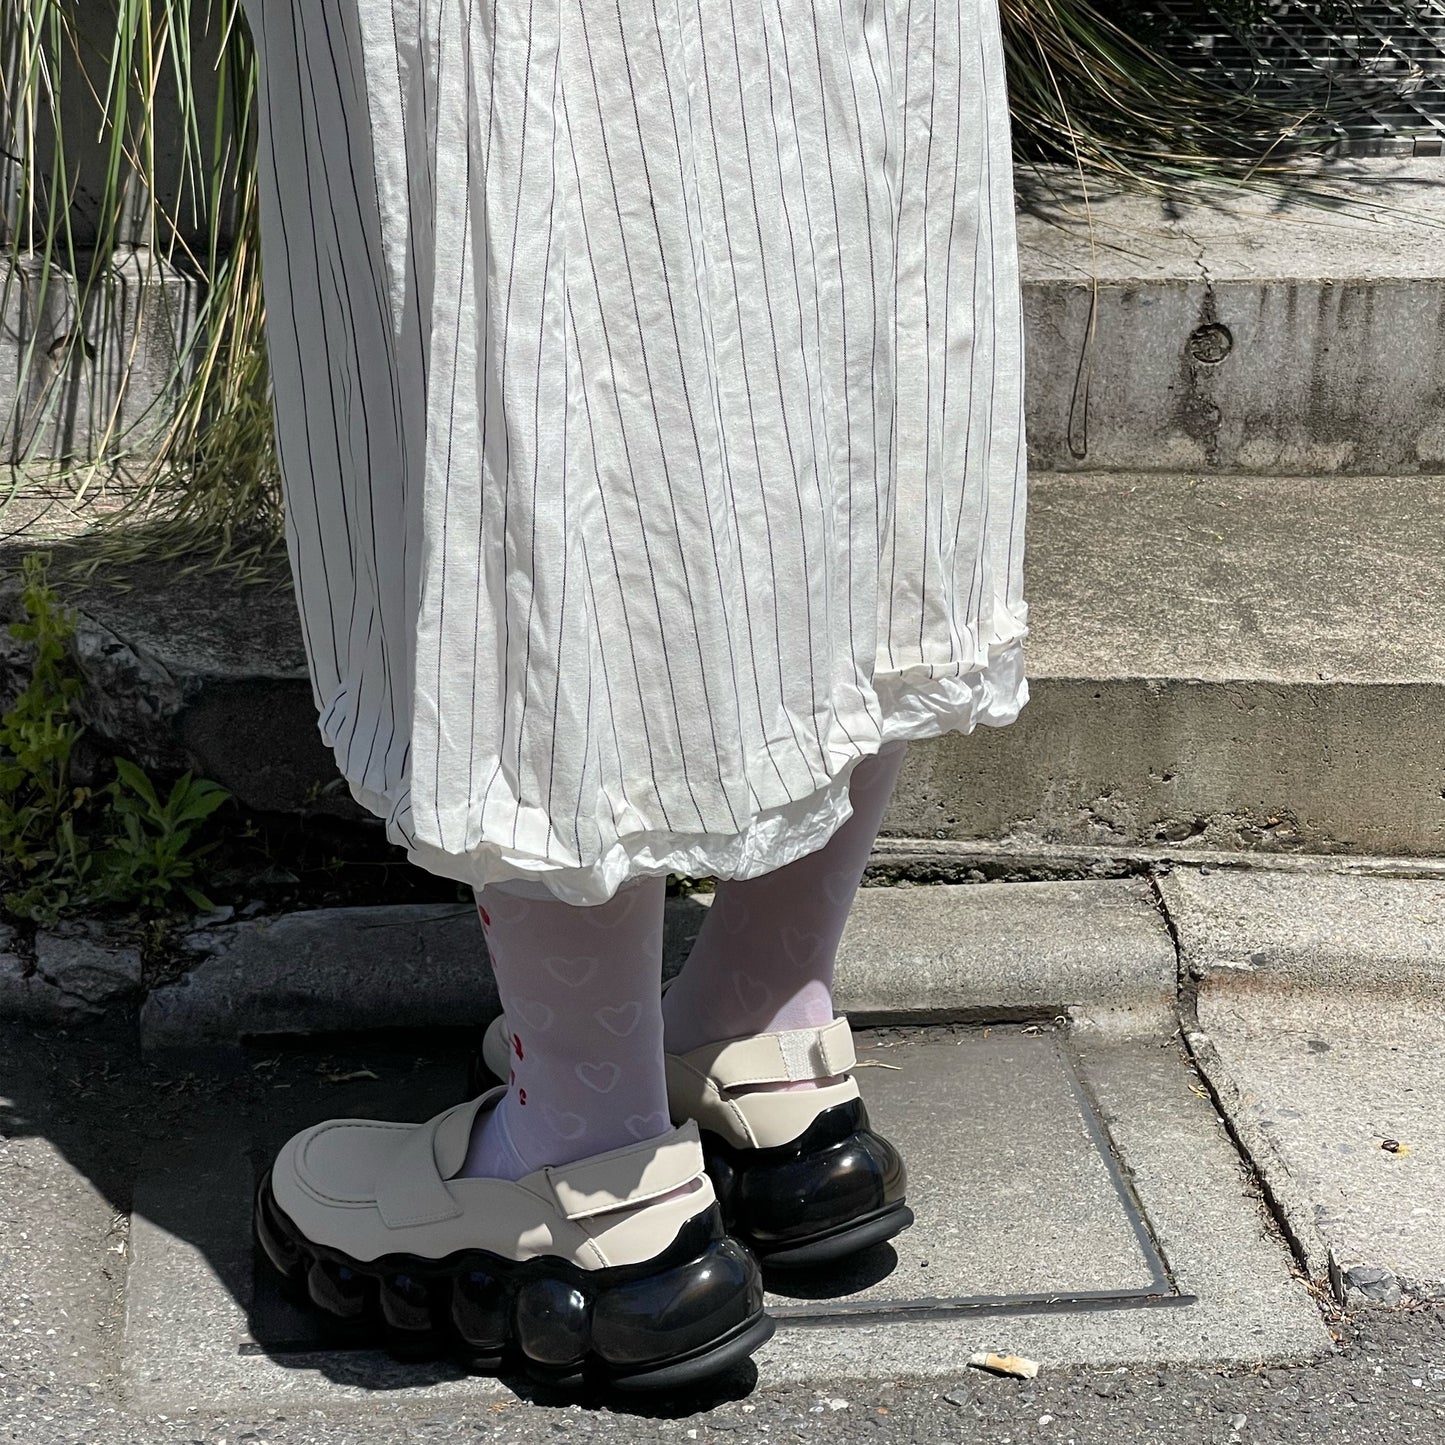 collapsed dress / stripe / ウォッシュ加工ドレス